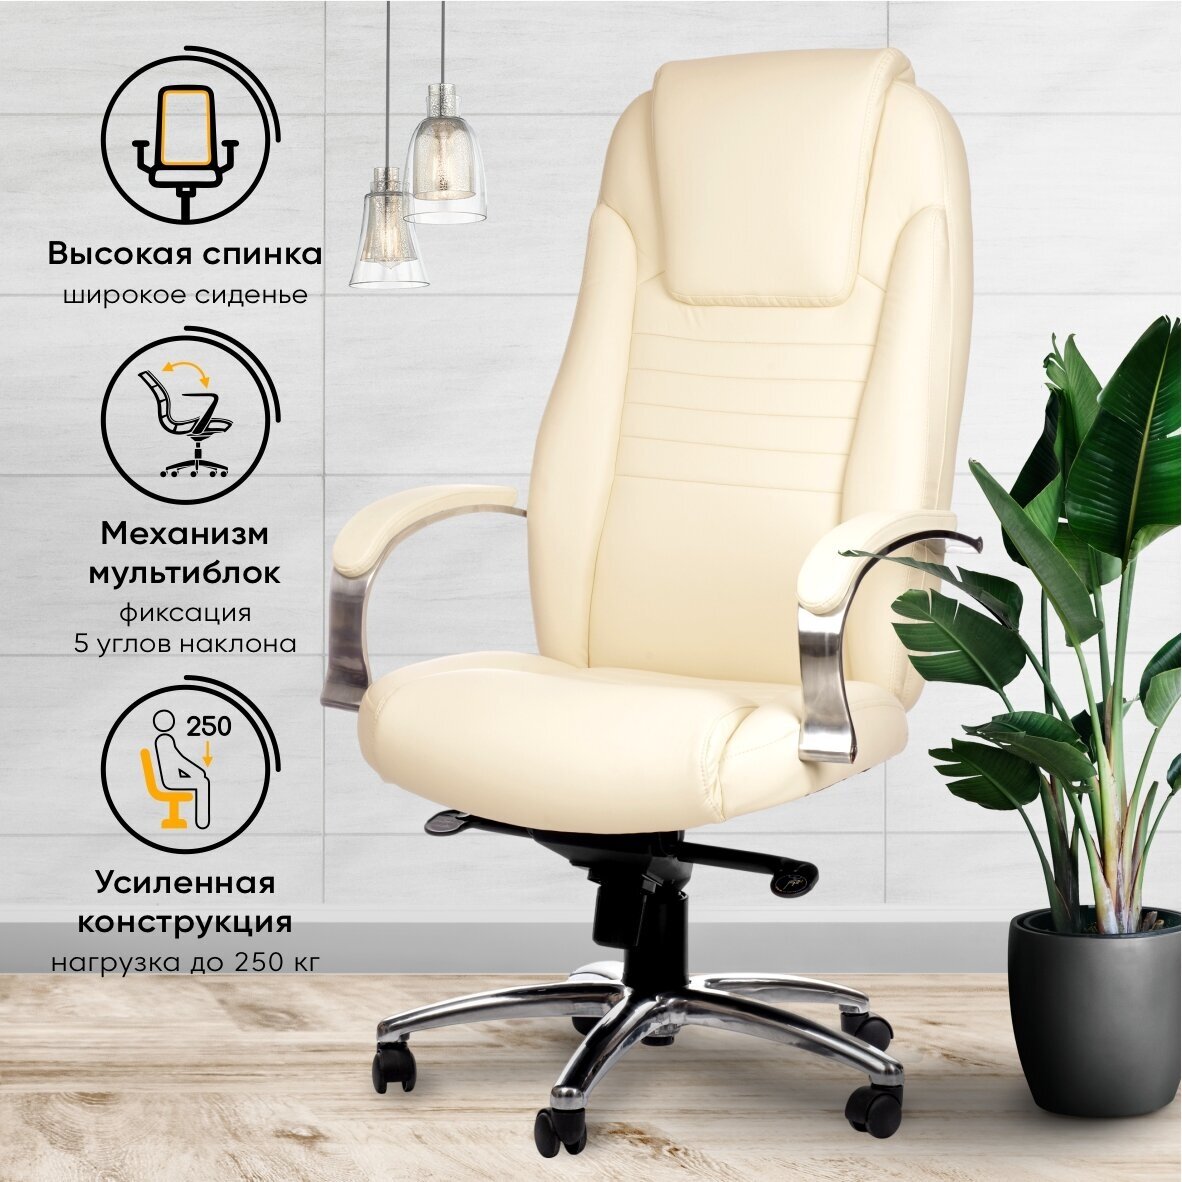 Компьютерное кресло РосКресла Т-9923 для руководителя, обивка: искусственная кожа, цвет: бежевый — купить в интернет-магазине по низкой цене на Яндекс Маркете